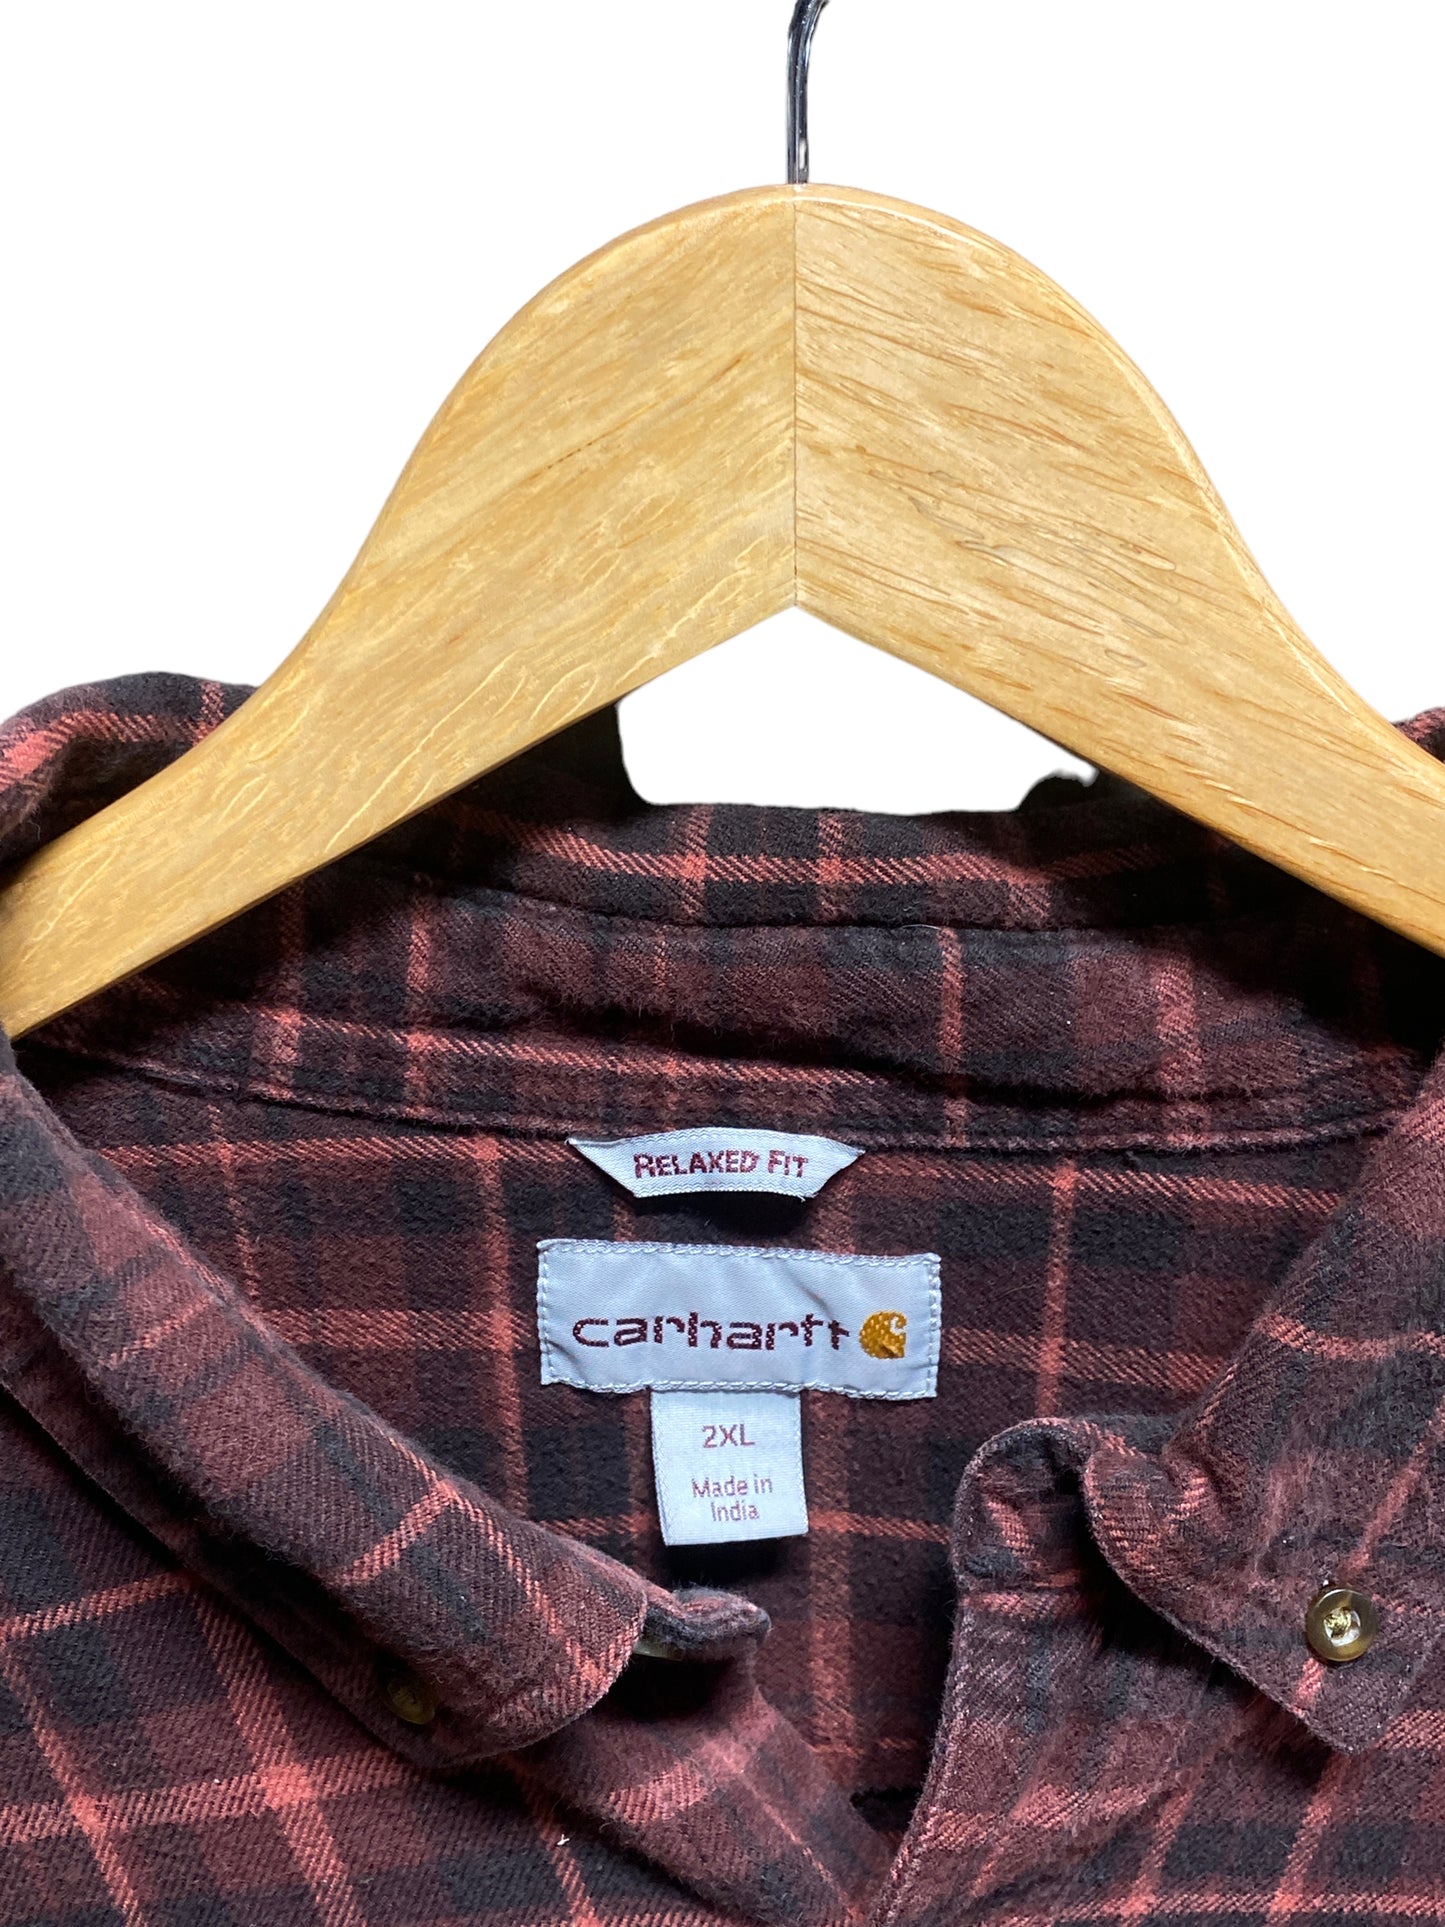 Carhartt Plaid Pattern Button Up Work Shirt Size XXL